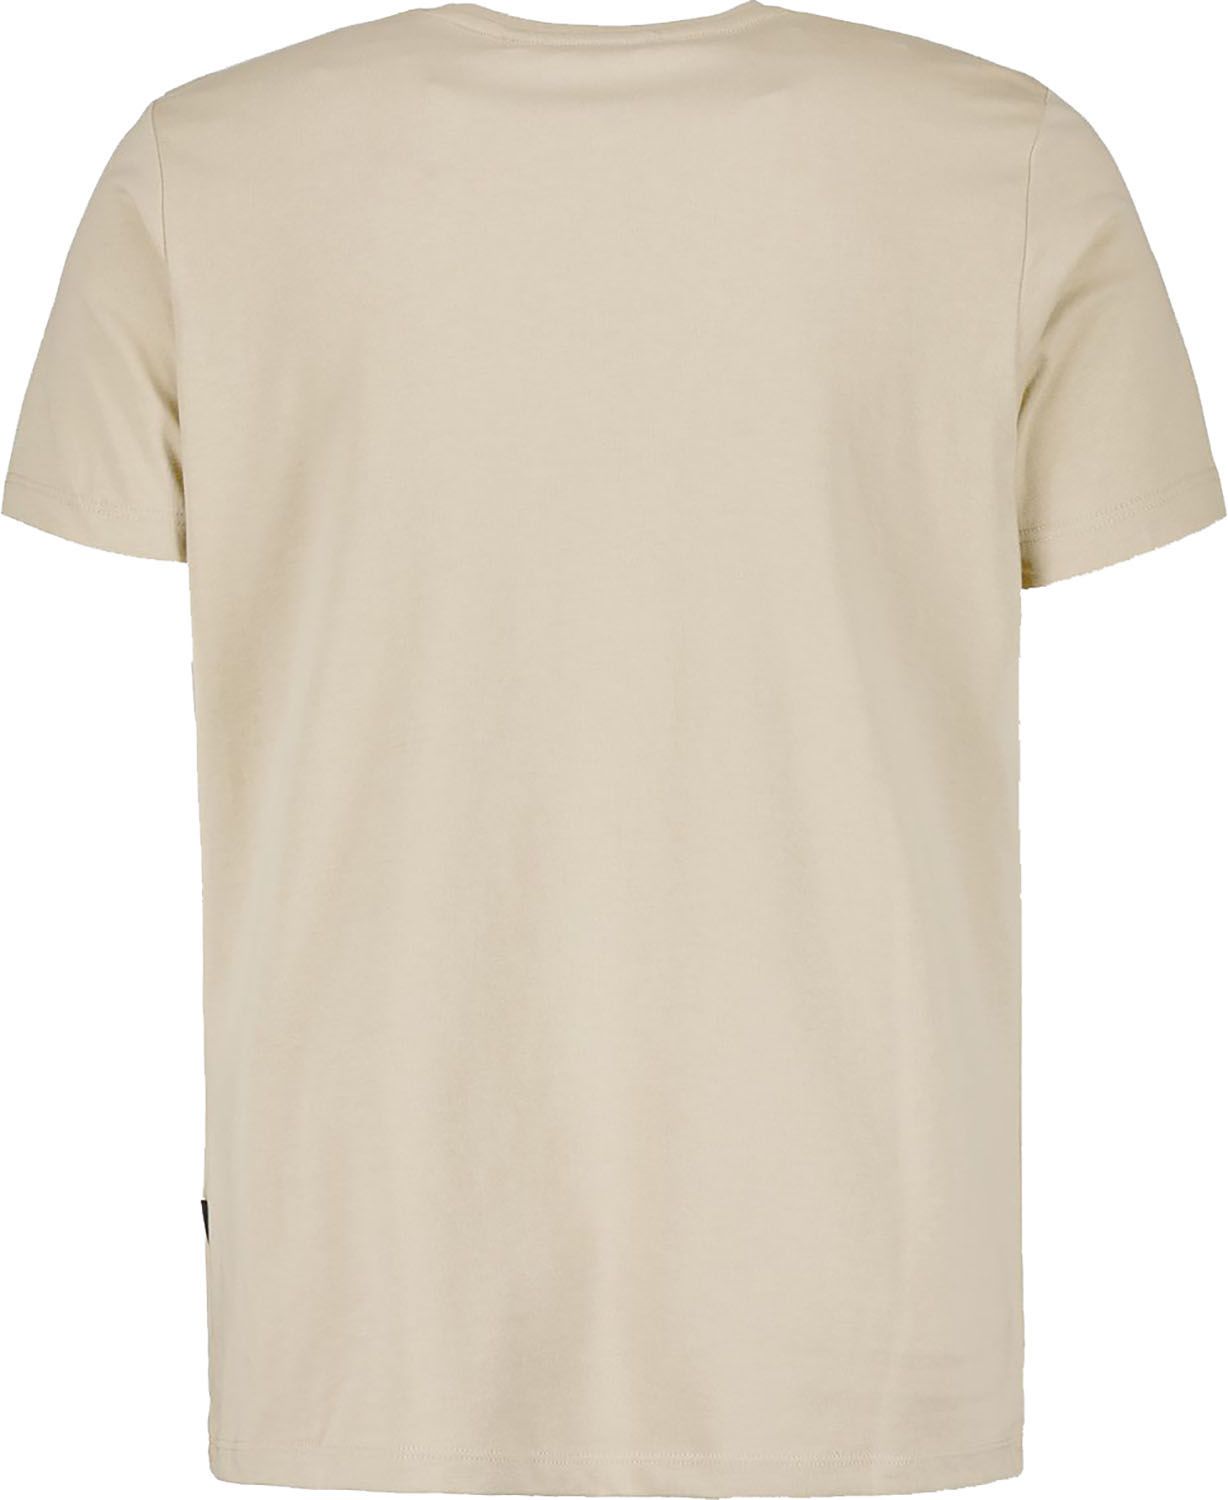 Airforce T-Shirt Creme